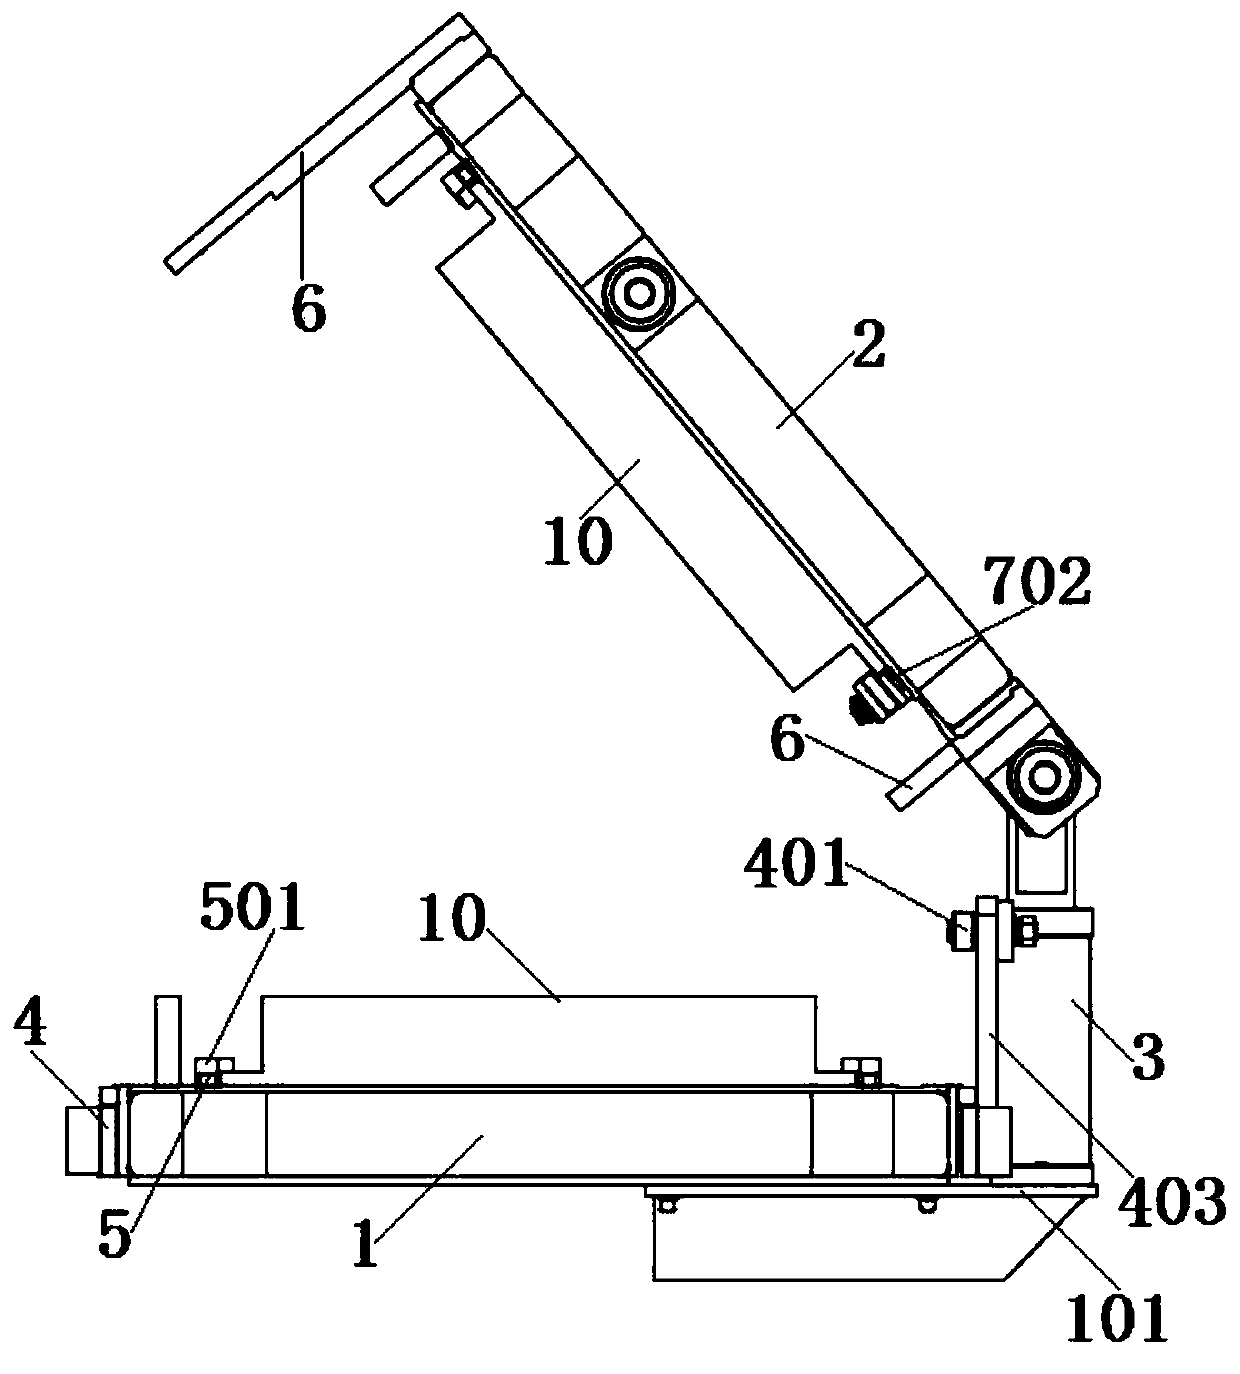 Novel fixture mechanism for refrigerator door body foaming line